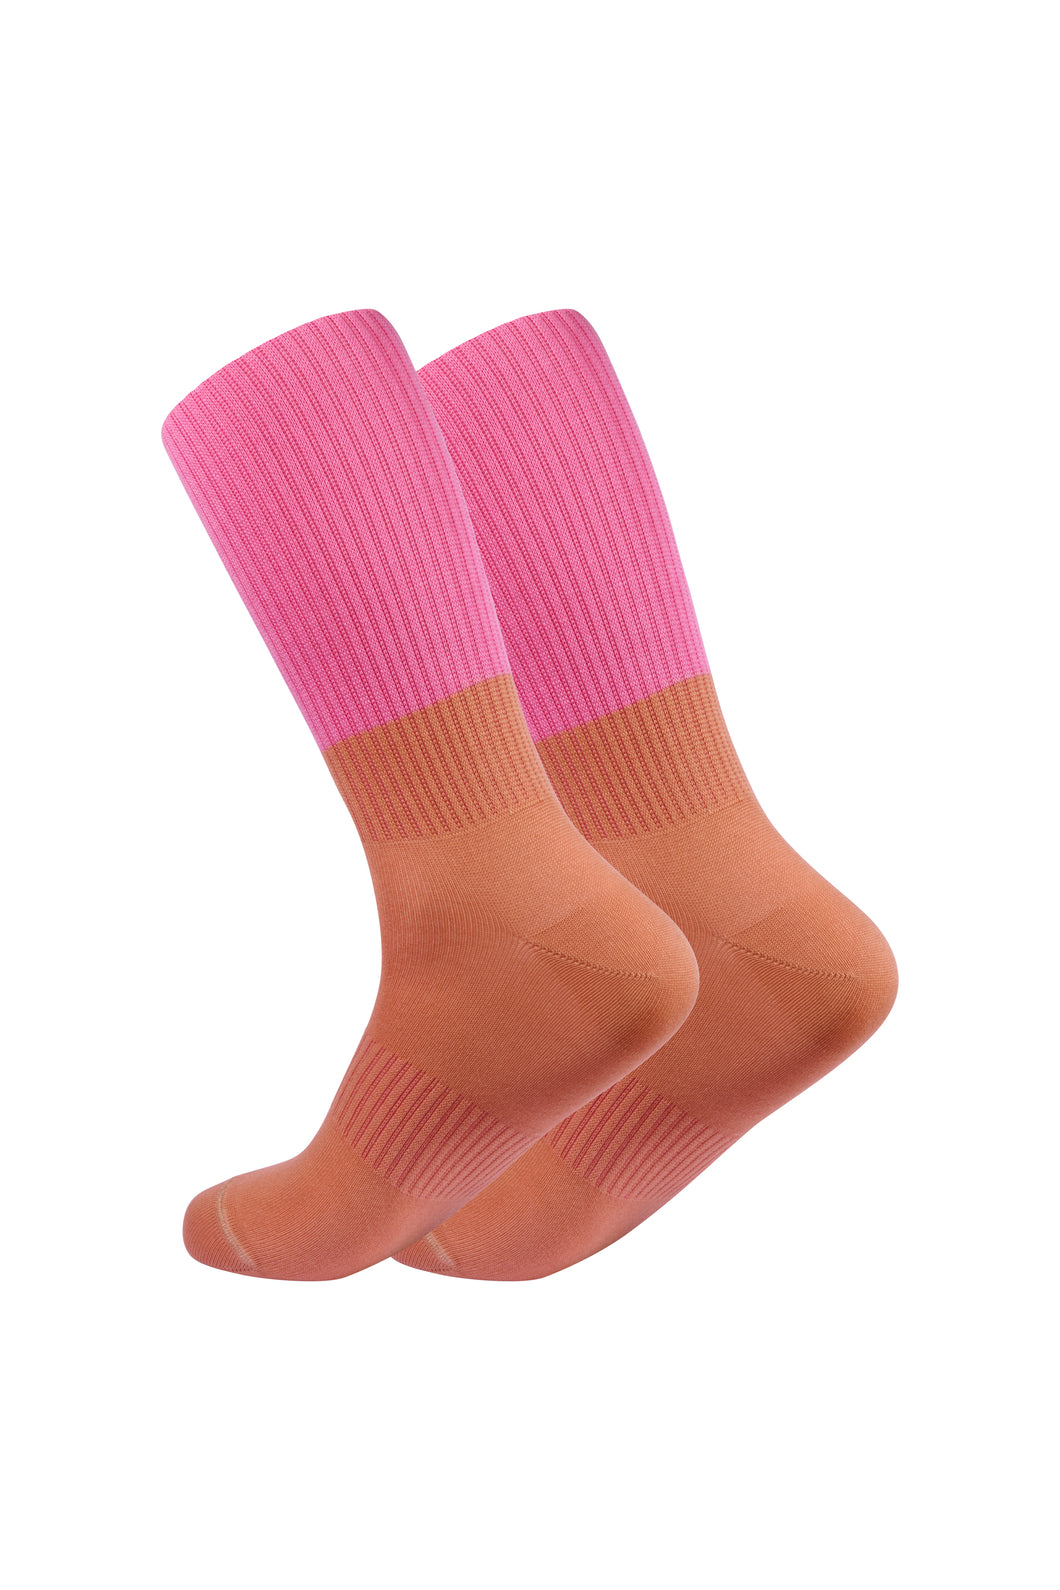 OOLEY Socks Ying Yang Pink Bronze